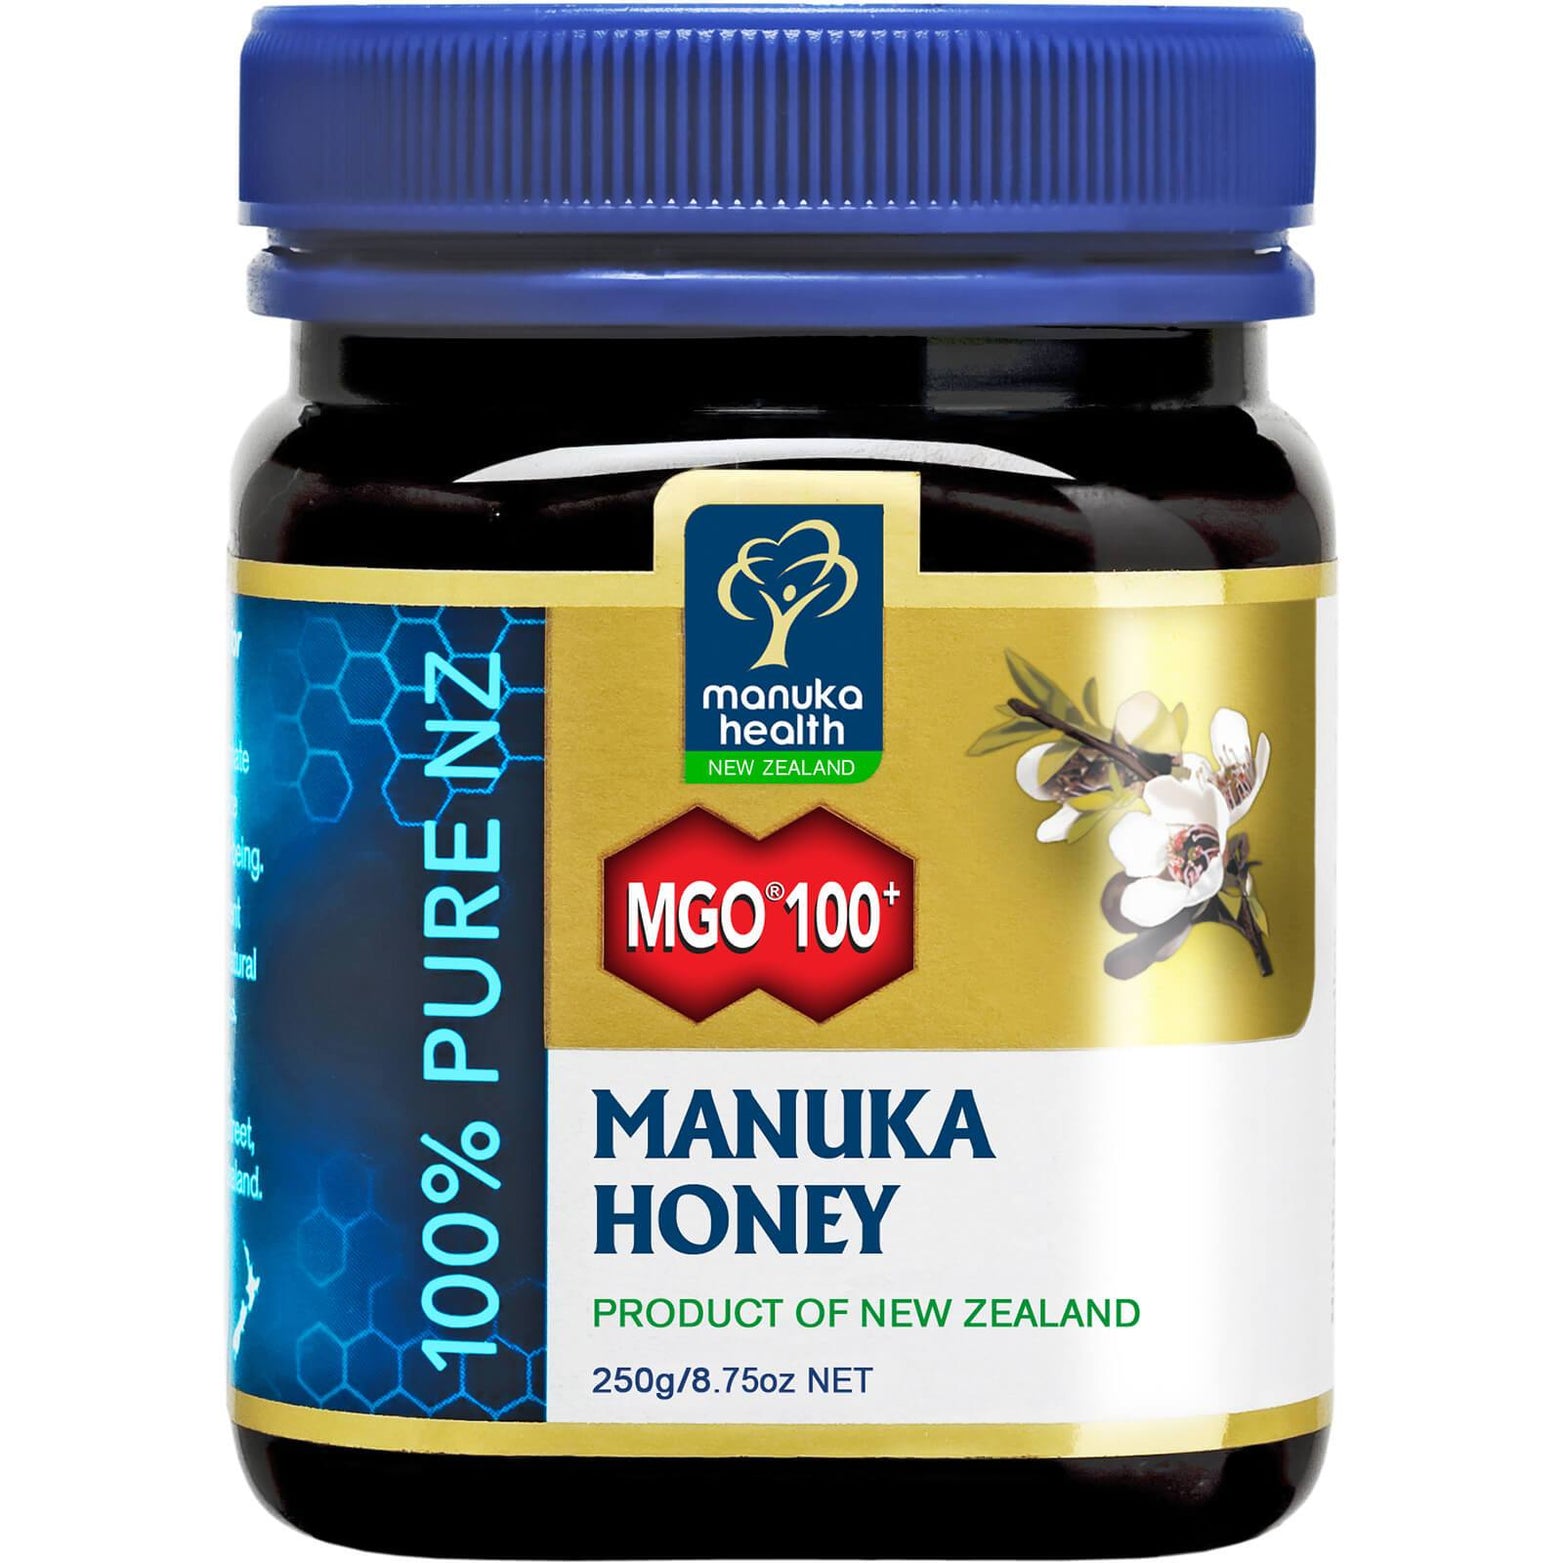 Buy MGO 100+ Pure Manuka Honey Blend 250g on med7online